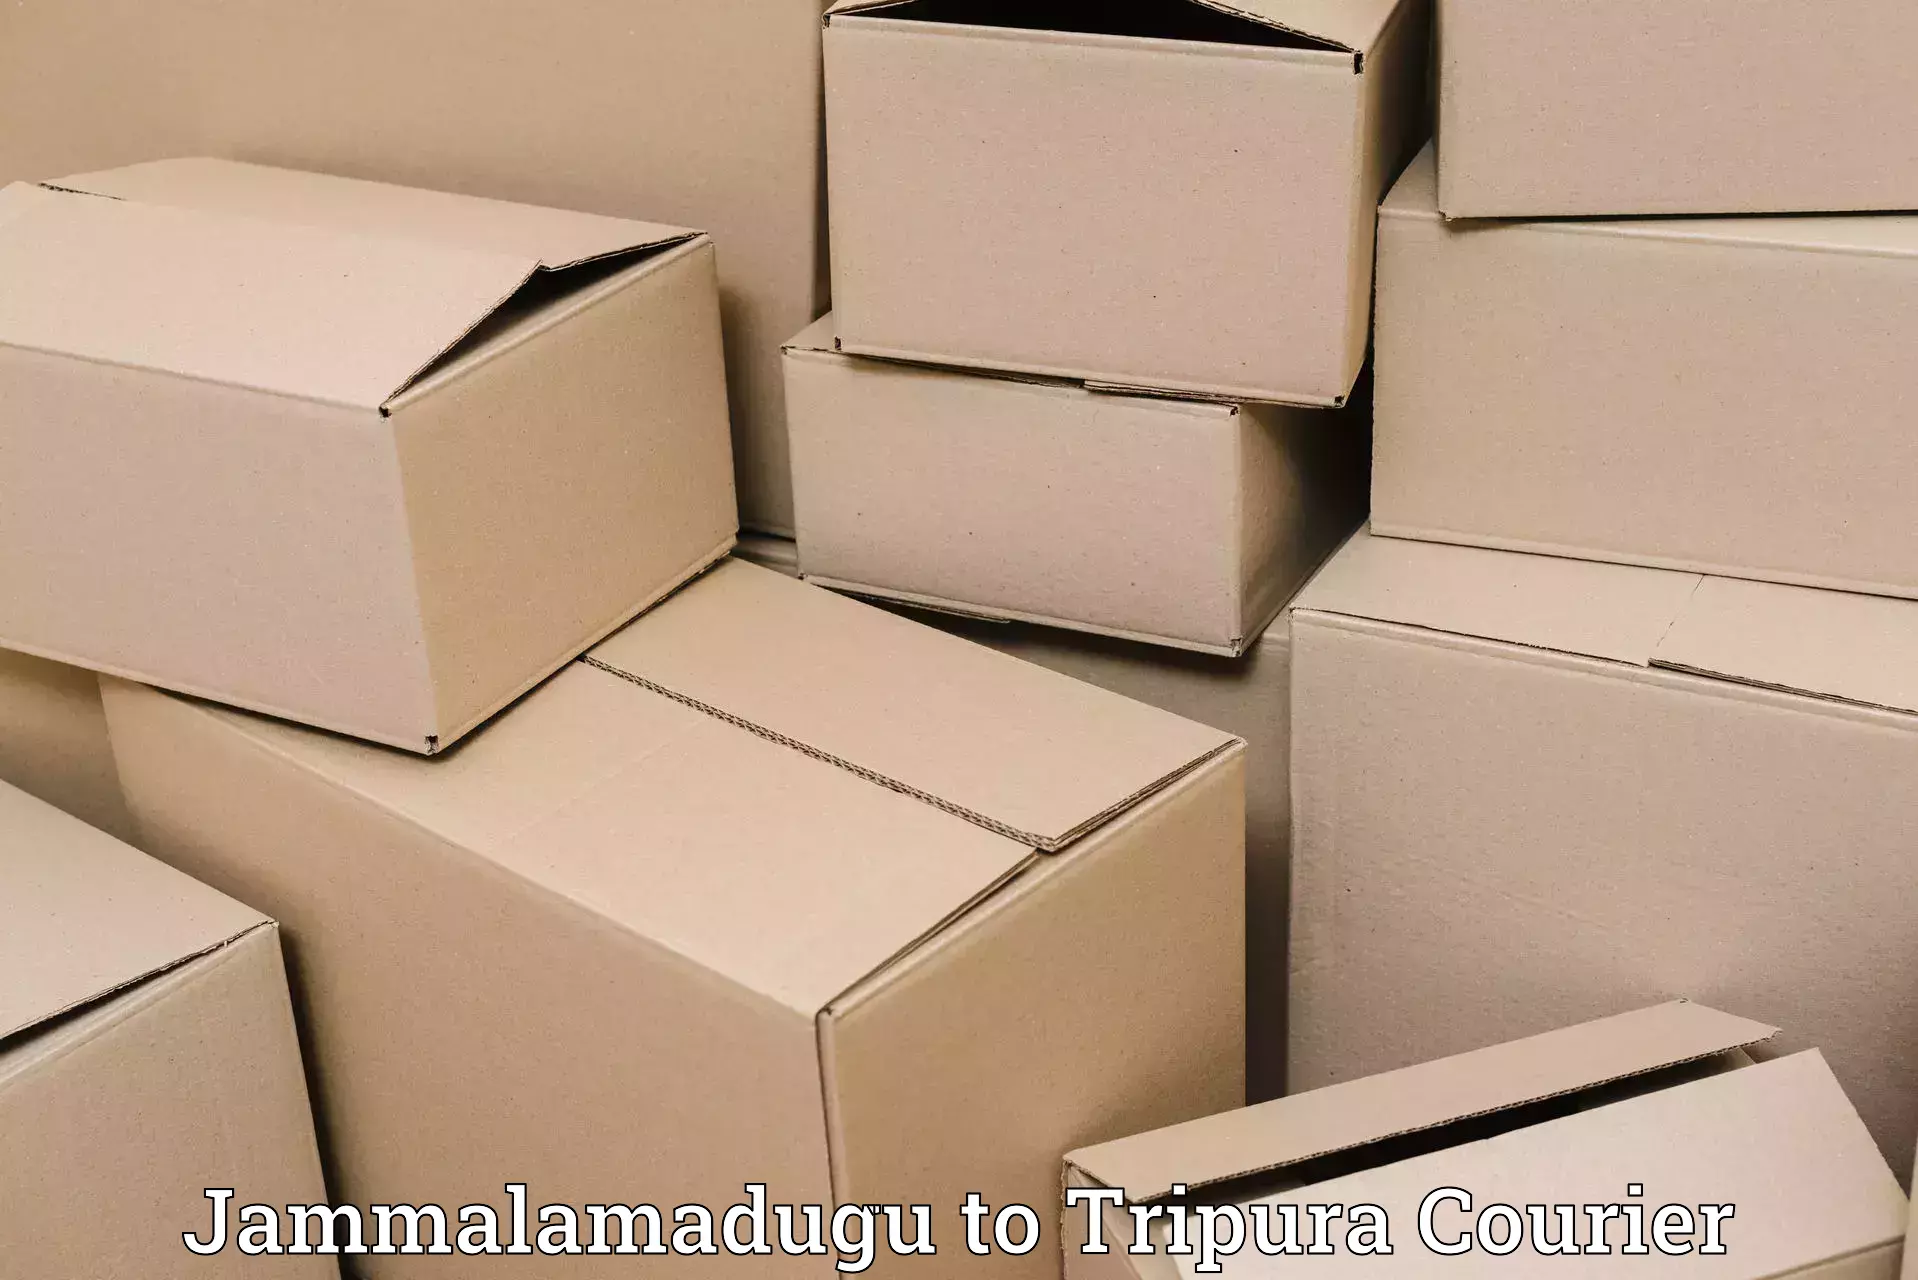 Premium courier solutions Jammalamadugu to Amarpur